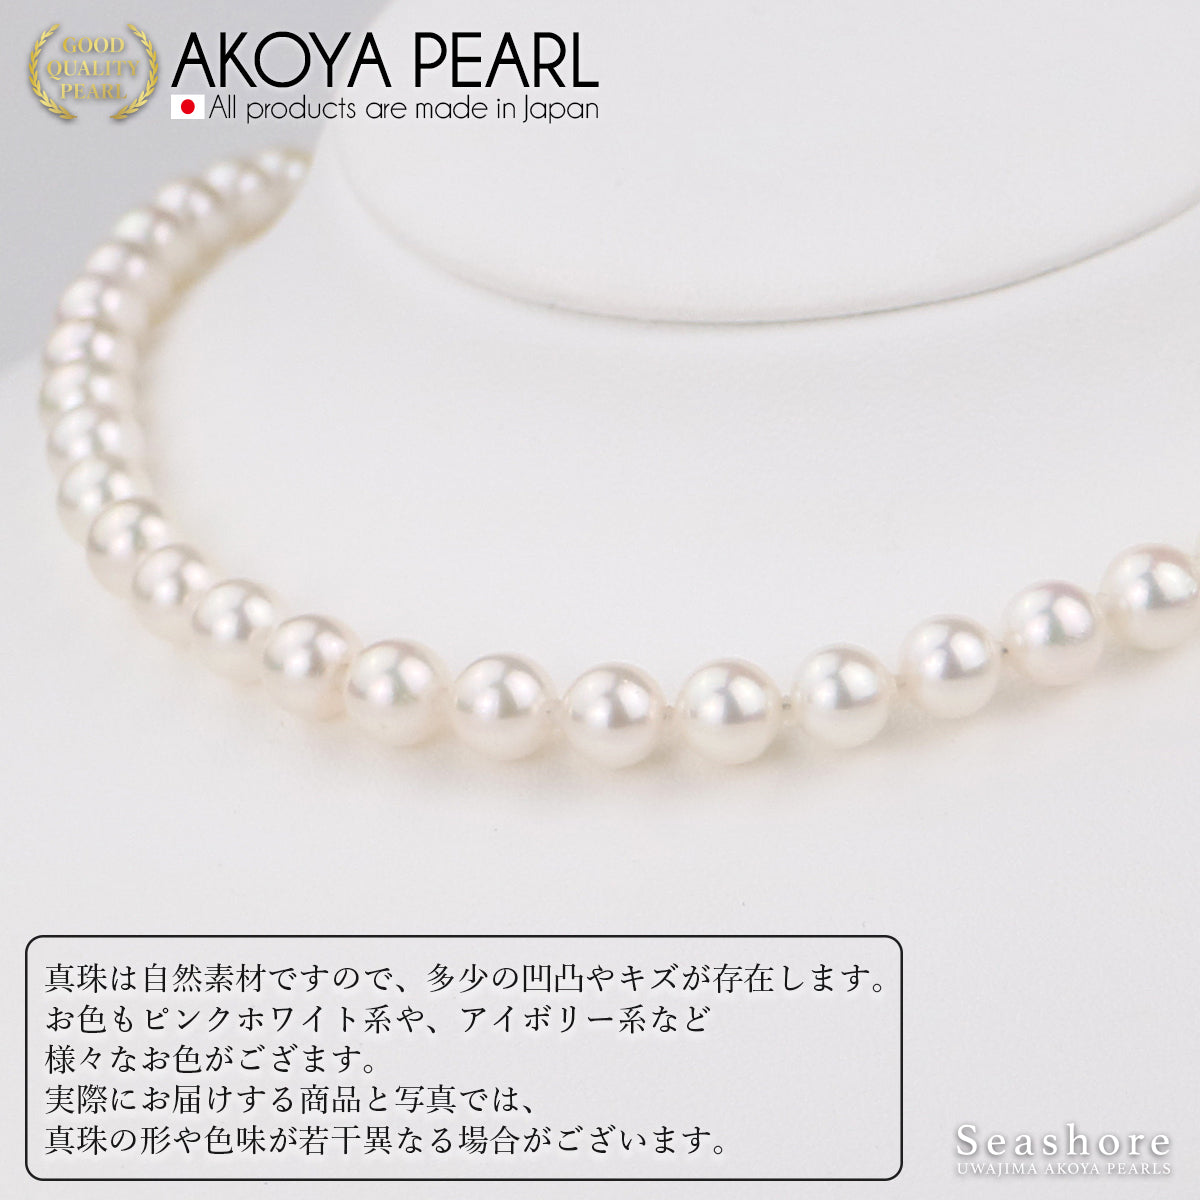 Akoya 珍珠正装项链 2 件套 [8.0-8.5 毫米]（含耳环）正装套装附真品证书和收纳盒 [电视购物]